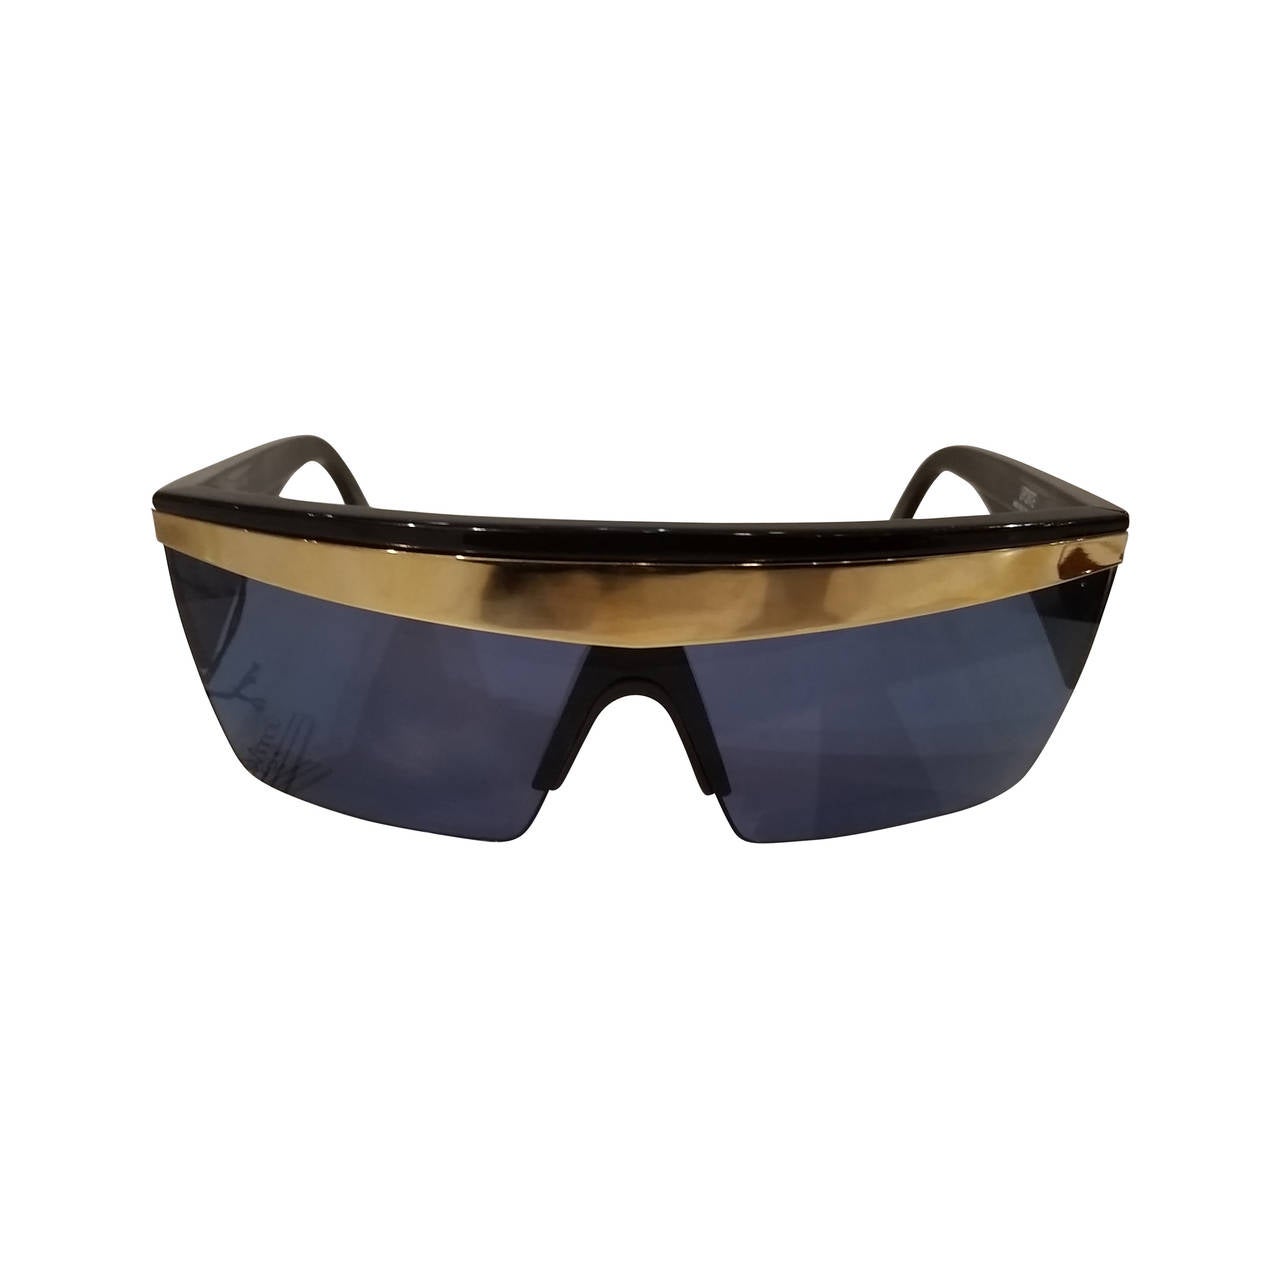 1980s Gianni Versace black mirrored "update" sunglasses